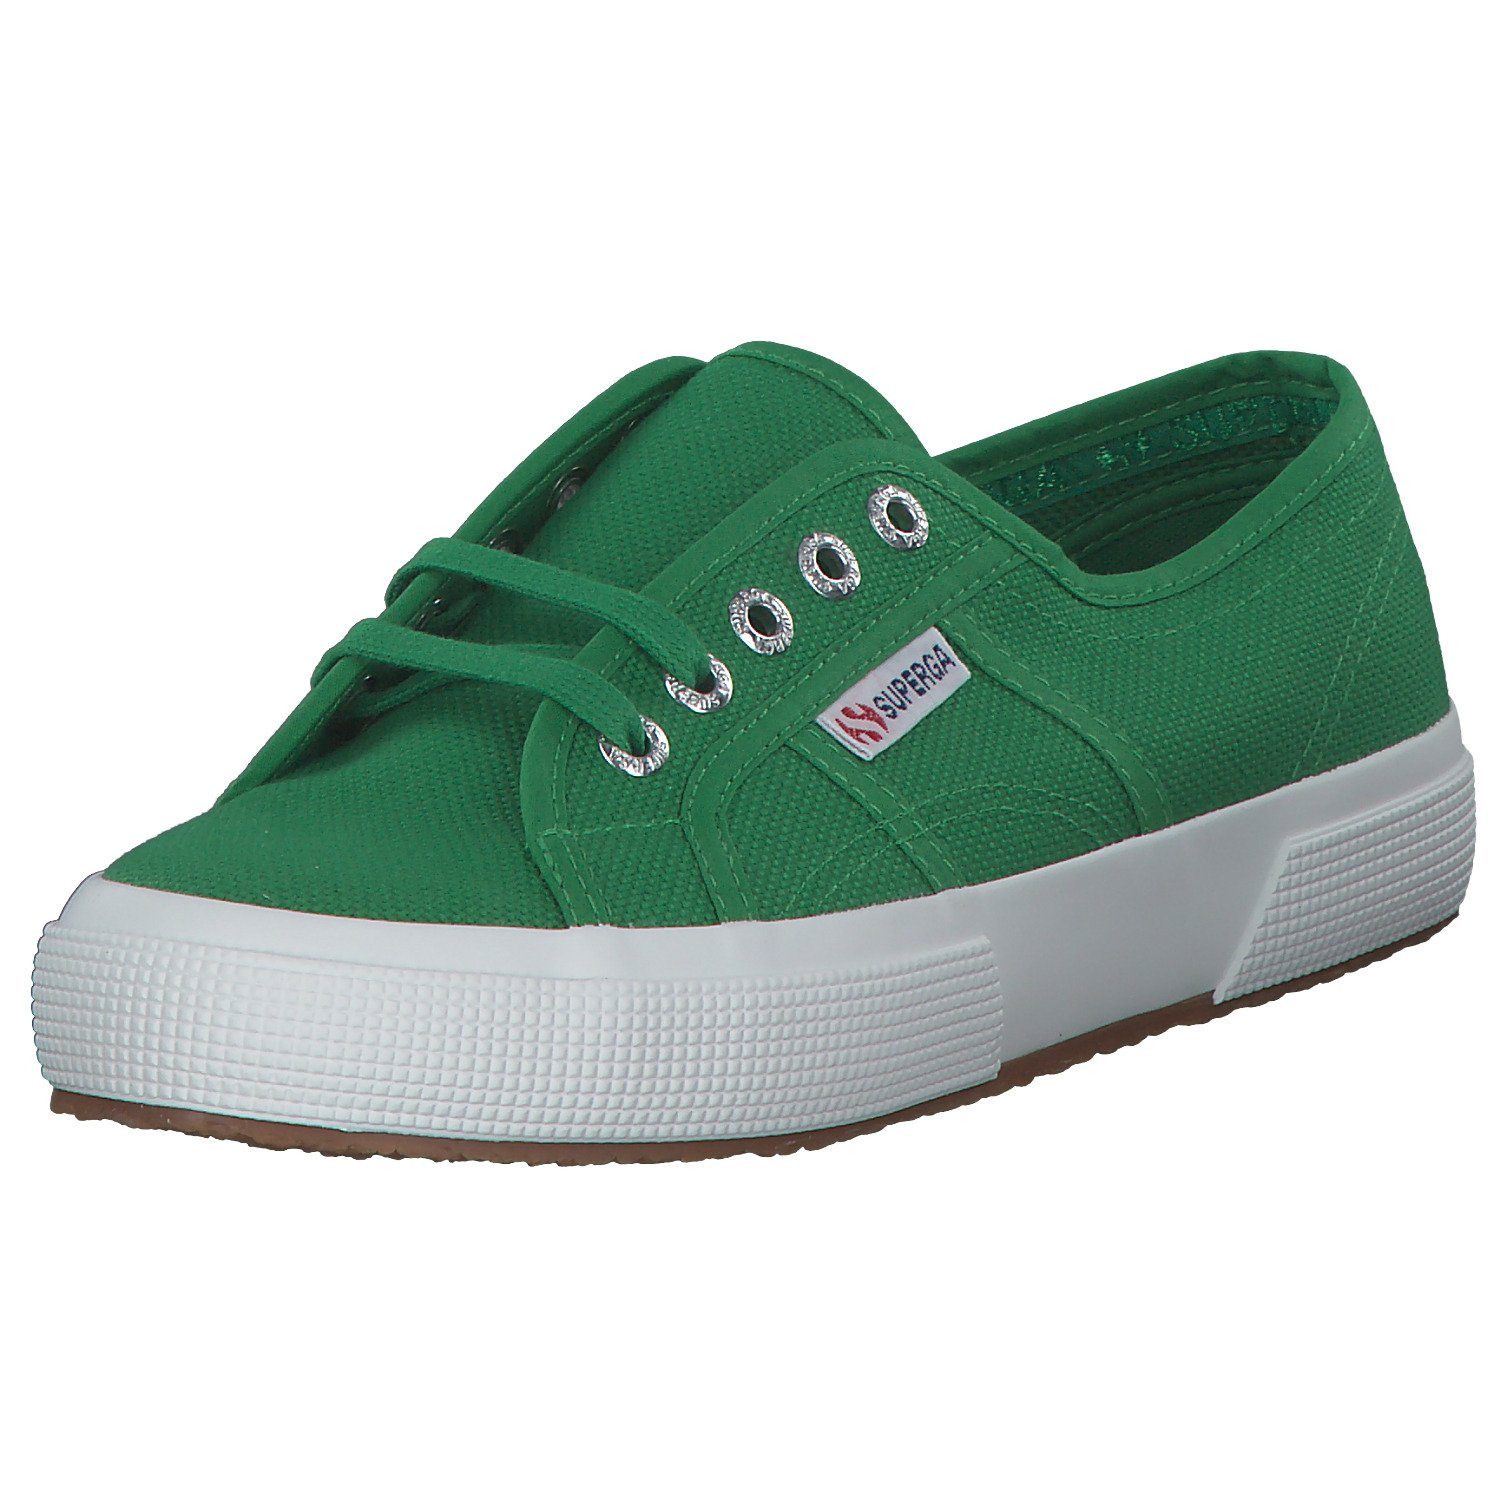 island Sneaker (19801315) S000010 Superga green 2750 Cotu Superga Classic